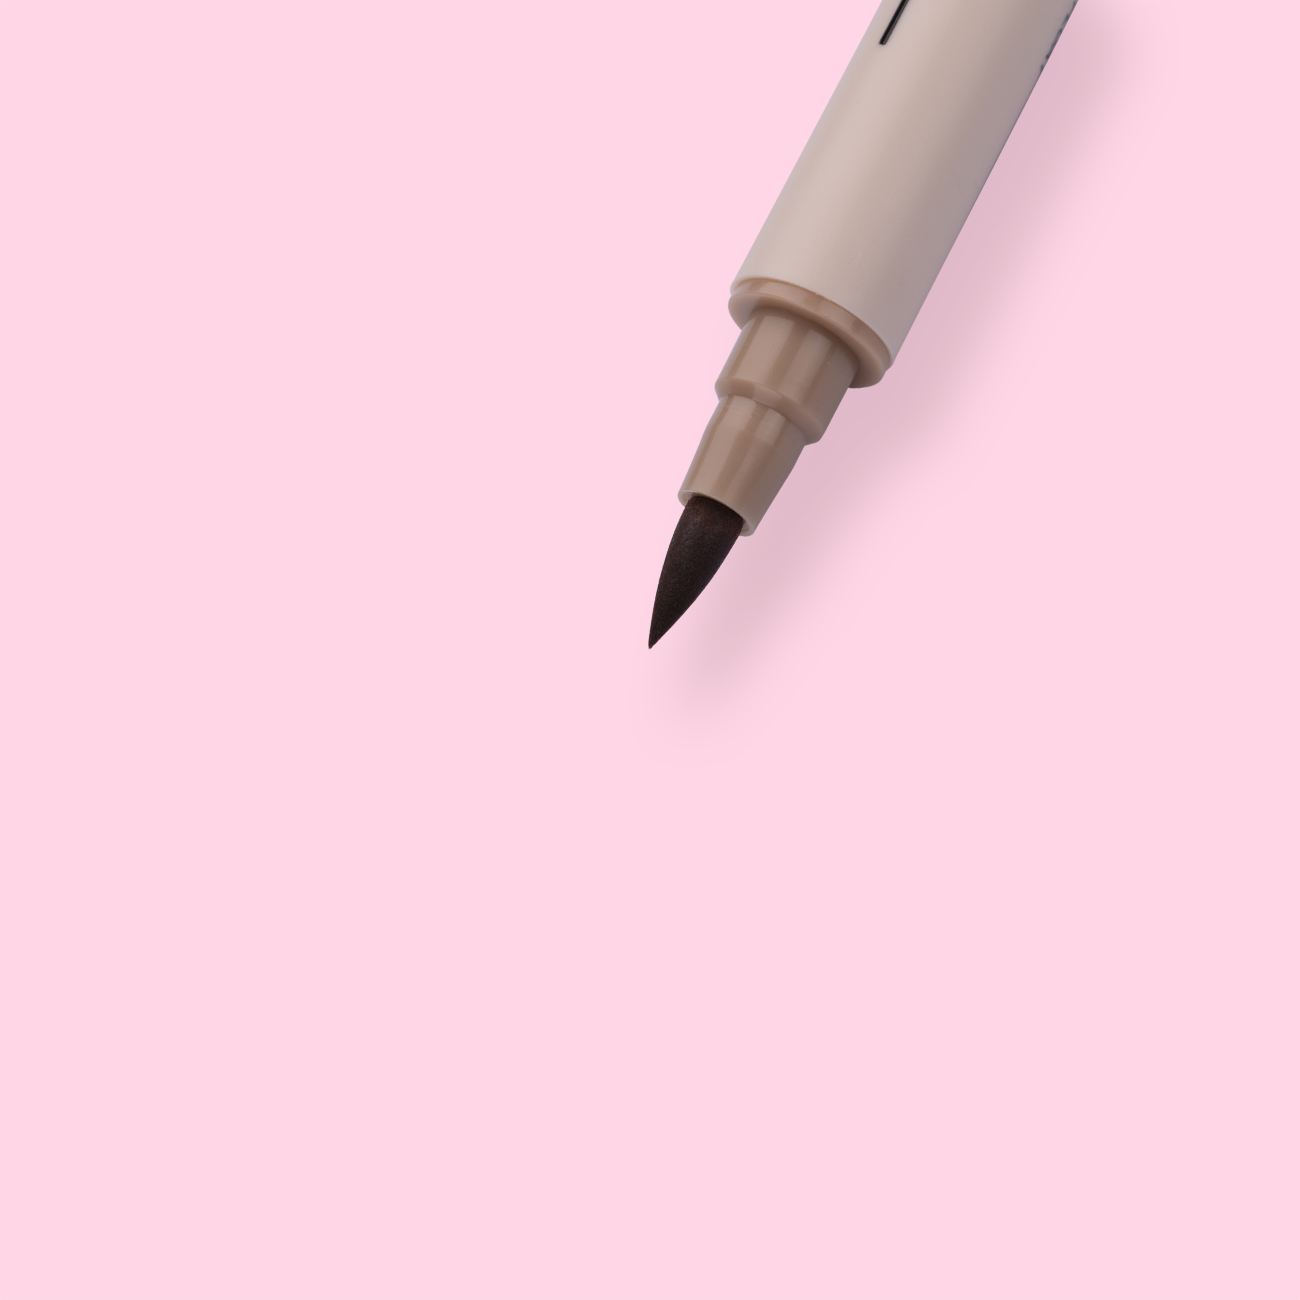 Color Scheme Pen Set - Cream Latte - Stationery Pal